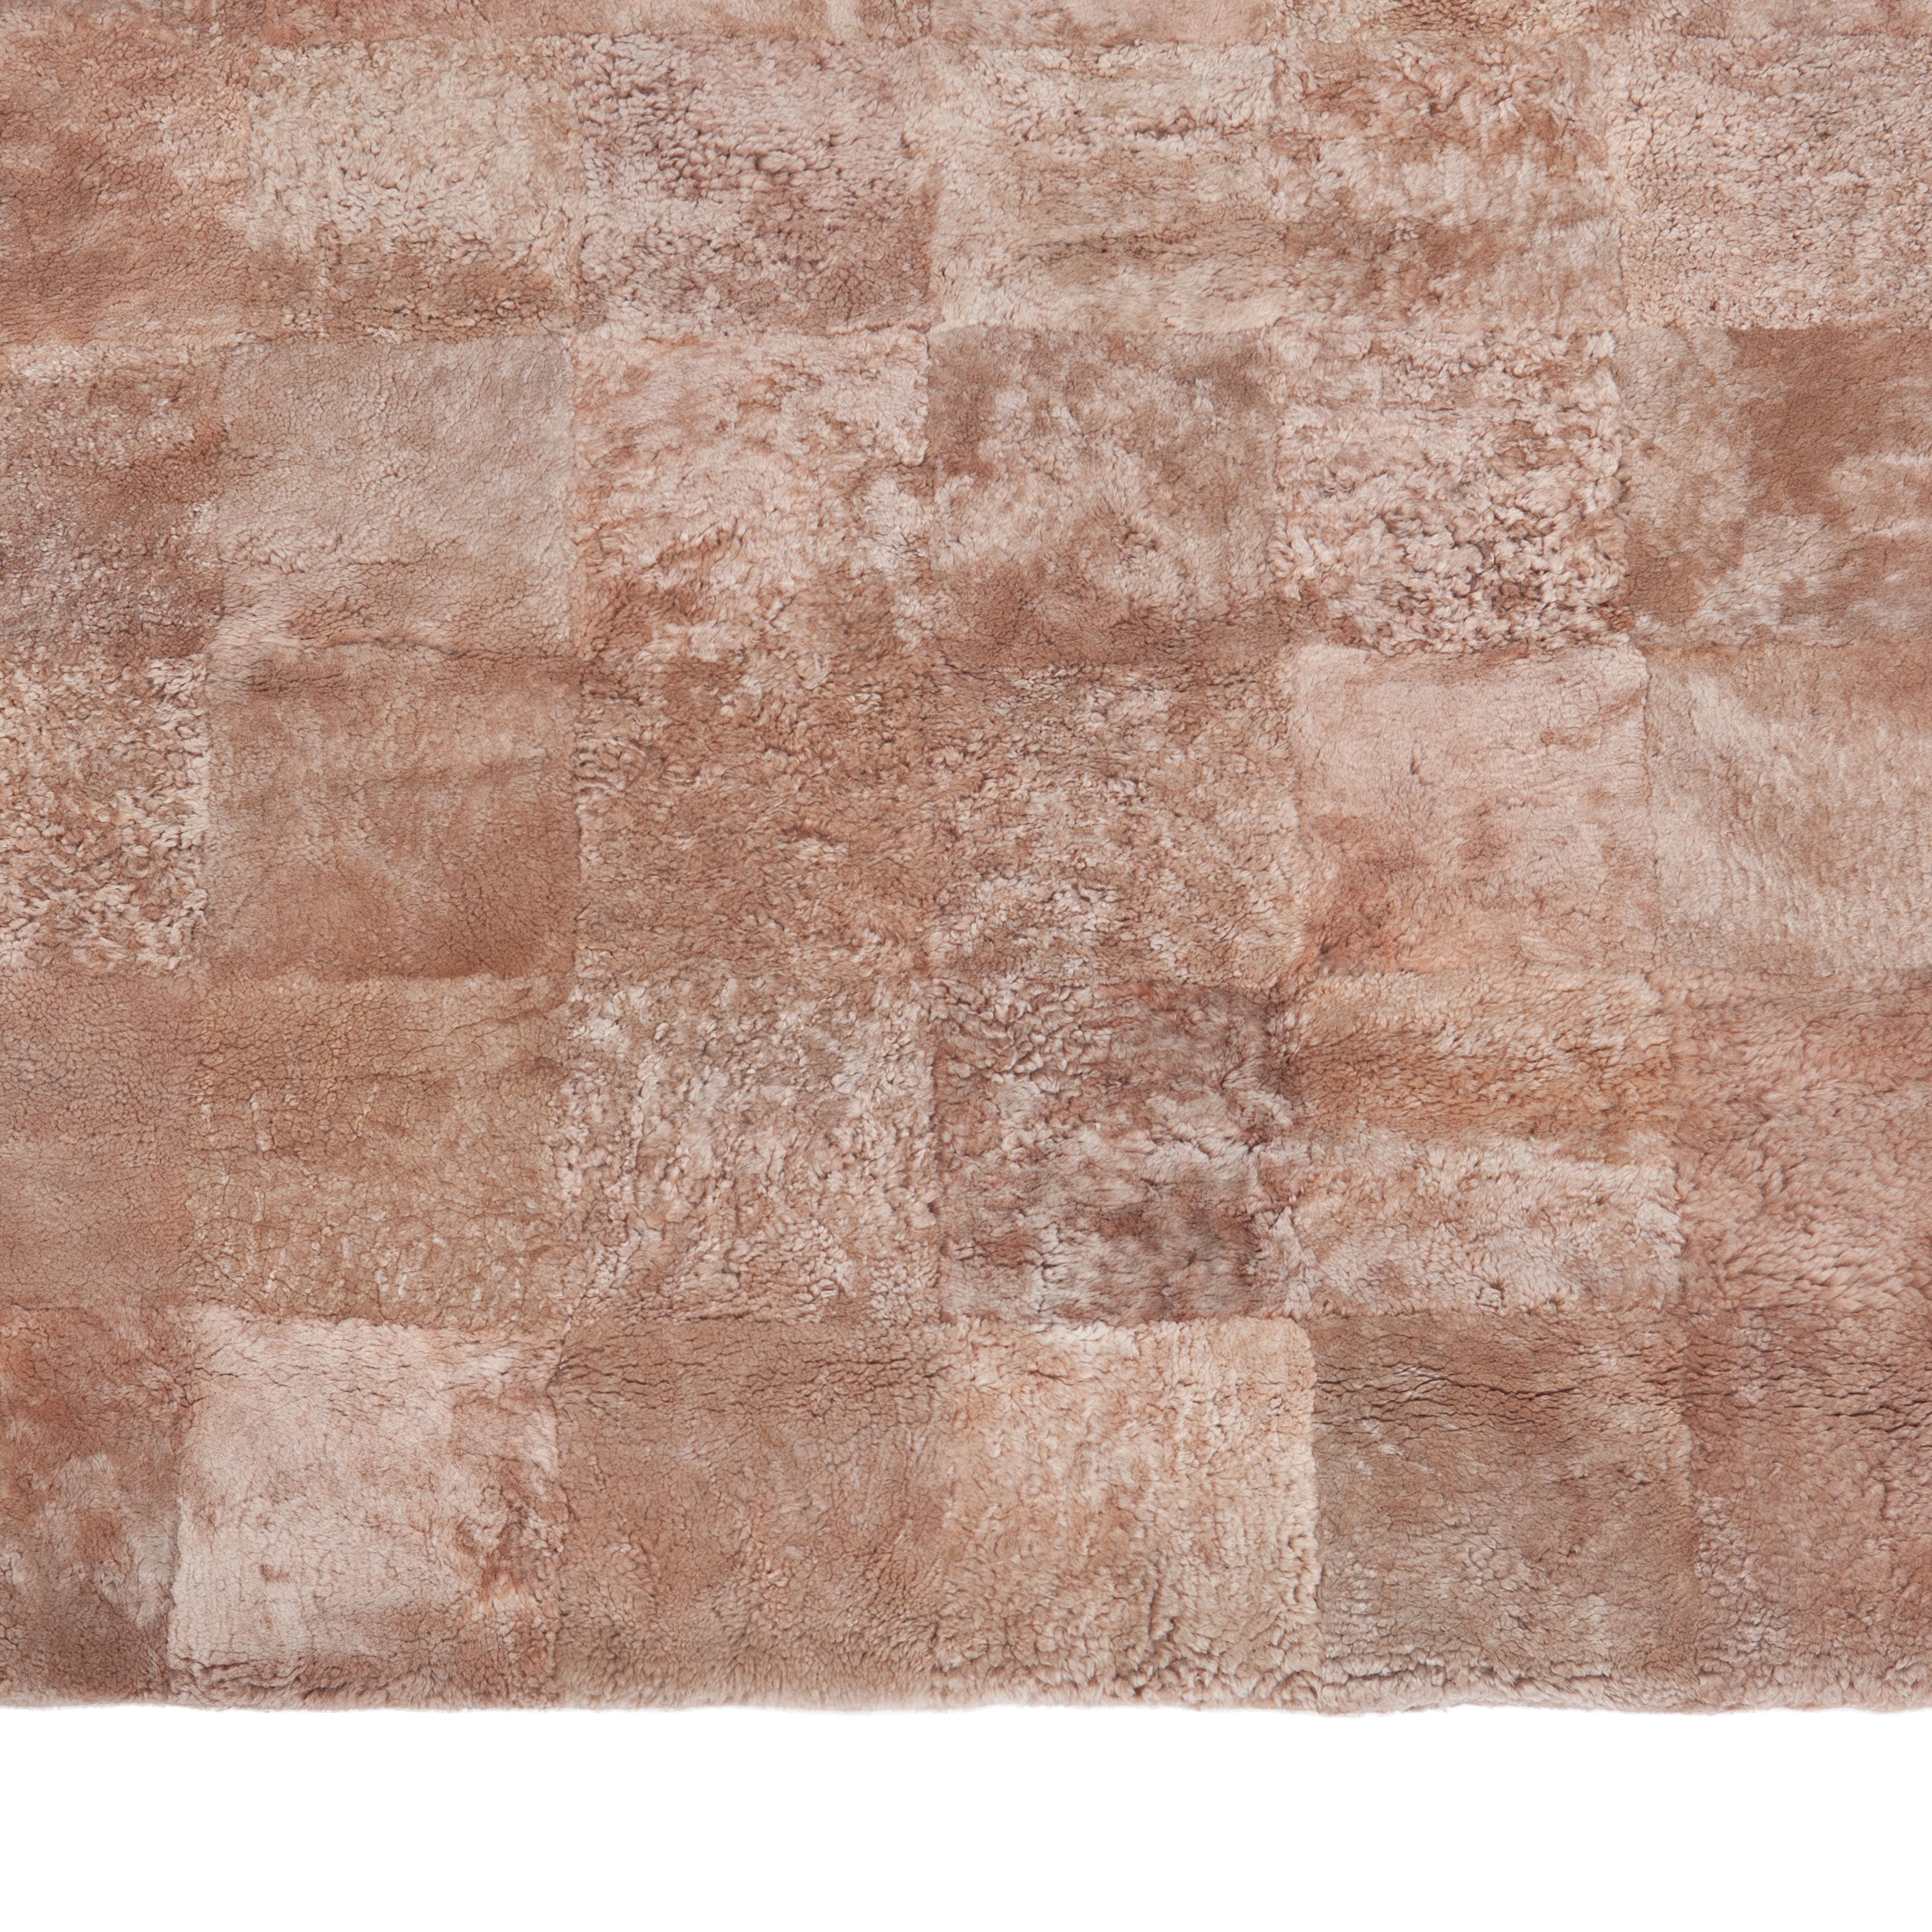 Pink Textured Sheepskin Rug - 4' x 4'